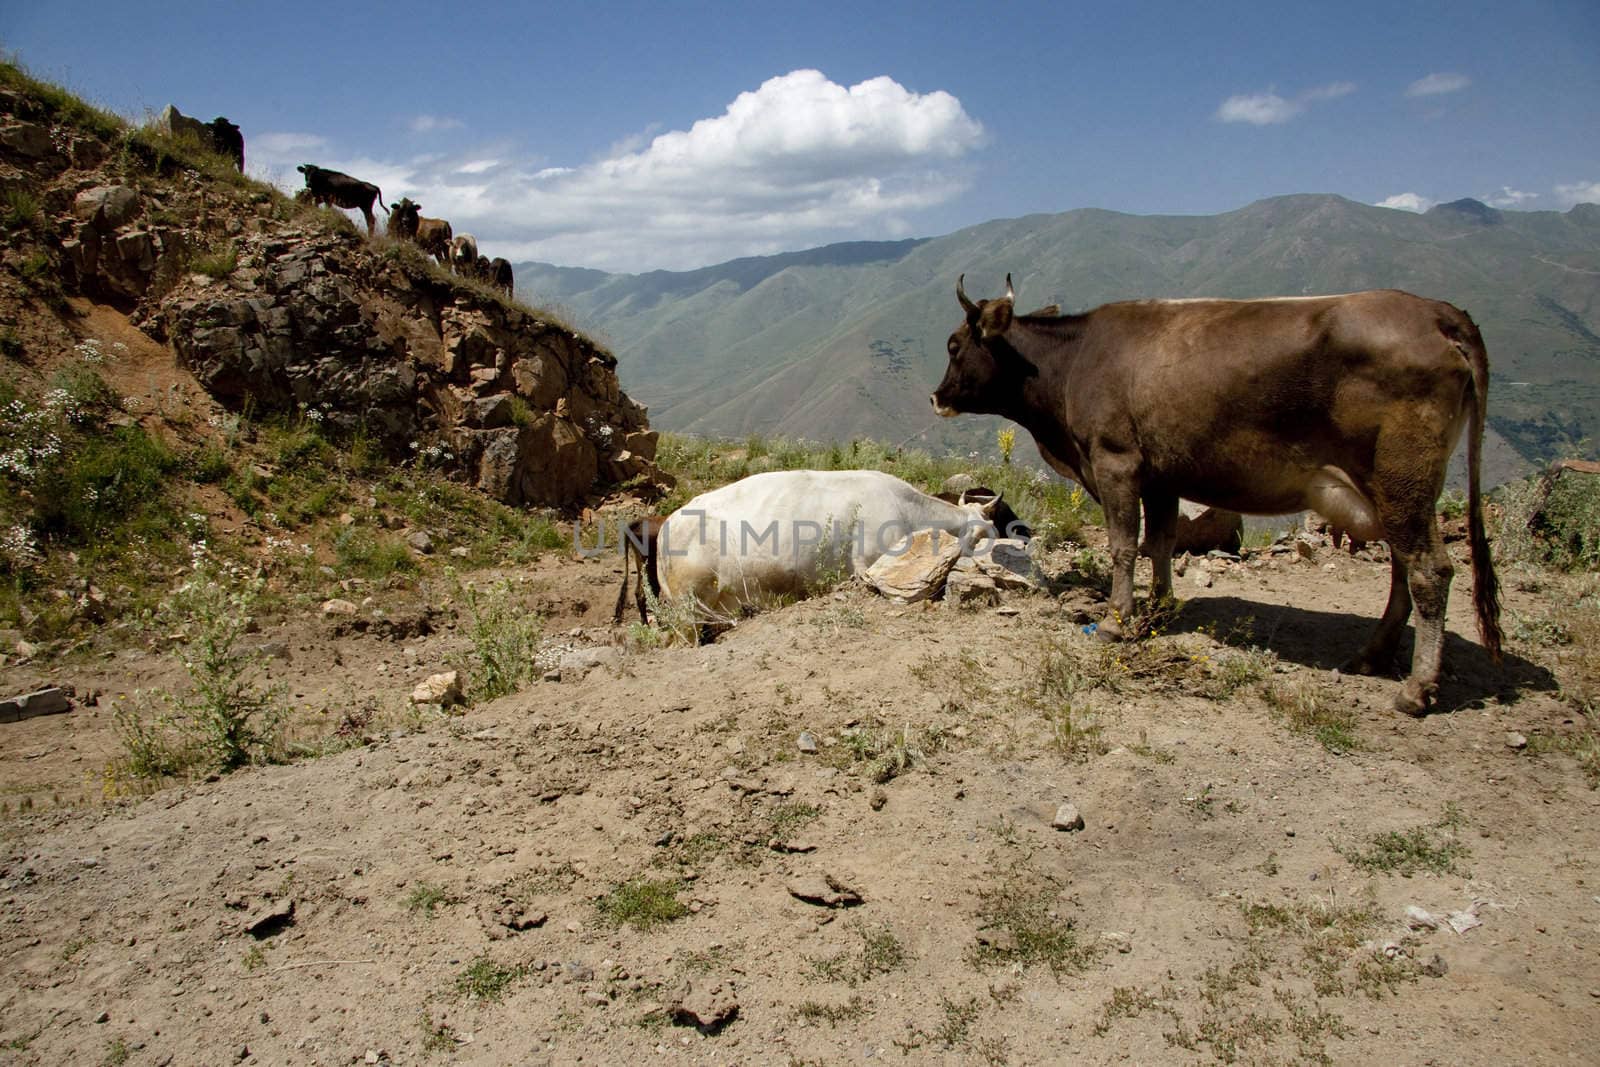 Brown cow in Armenia mountains, near Meghri passing